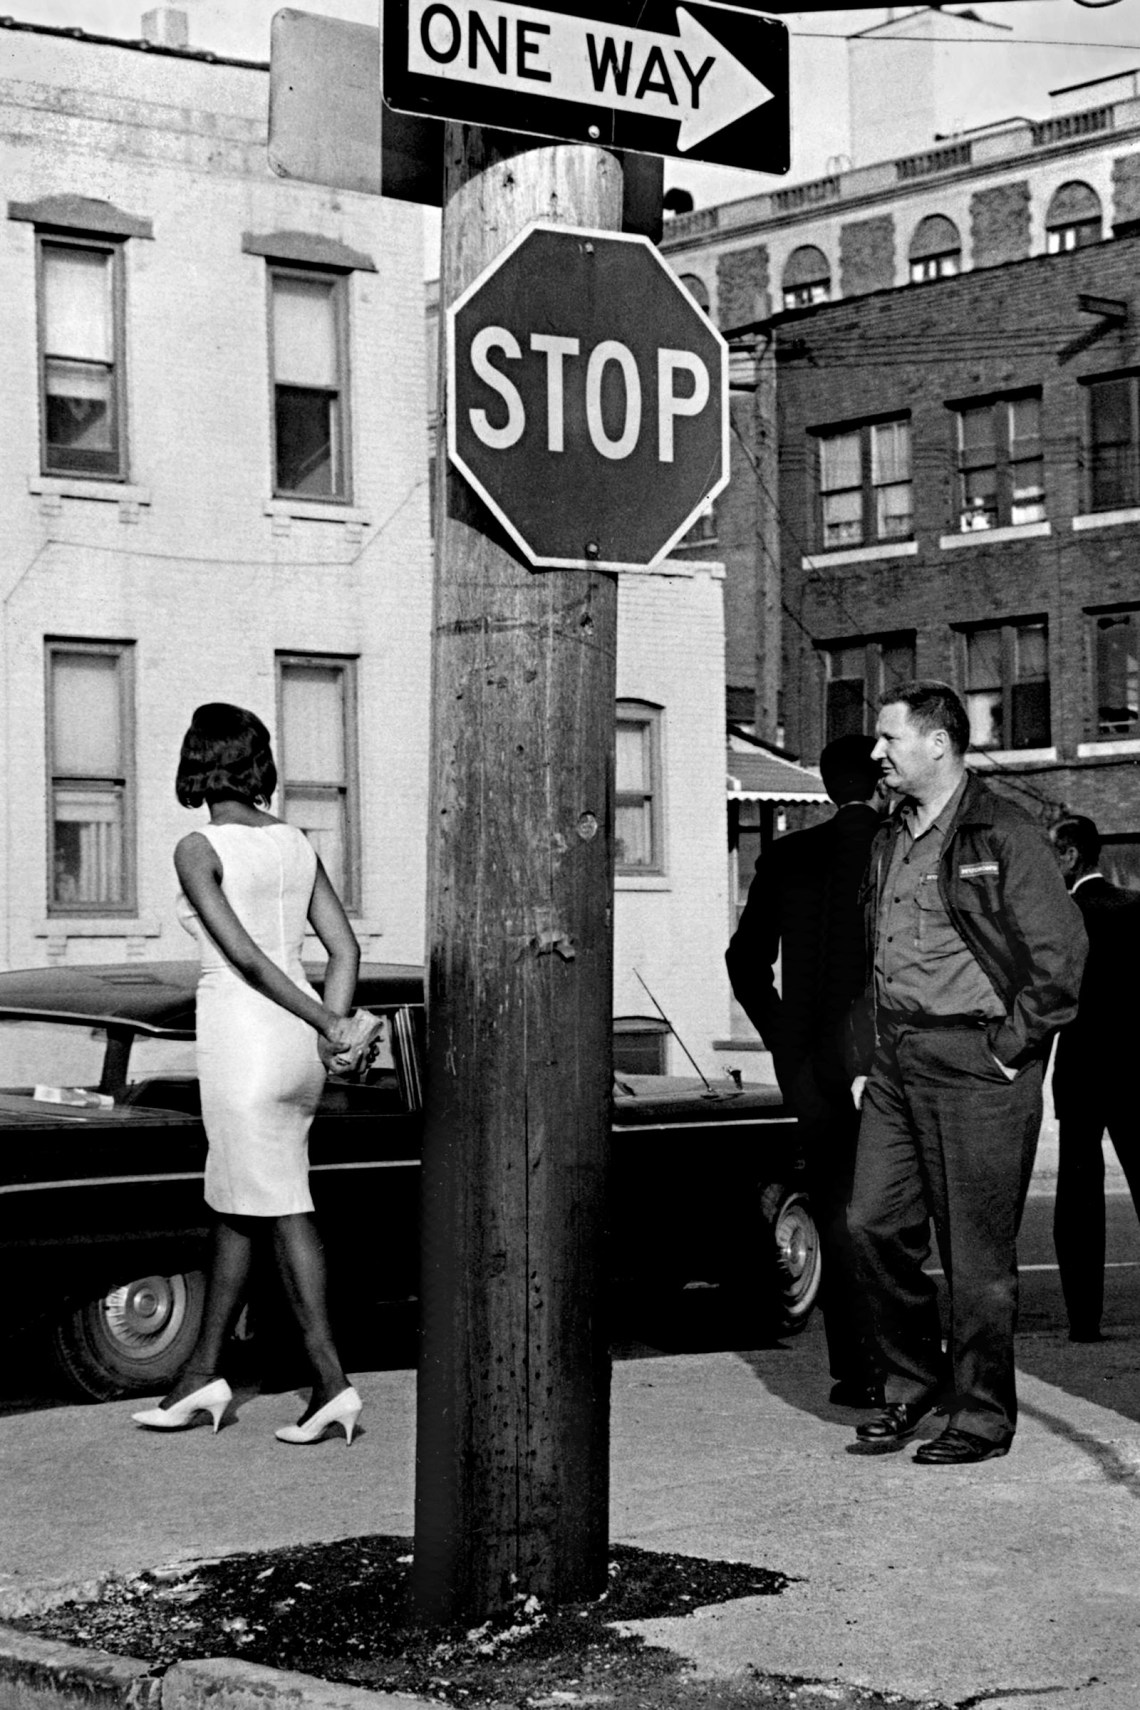 A sex worker on Cass Avenue, Detroit, 1965